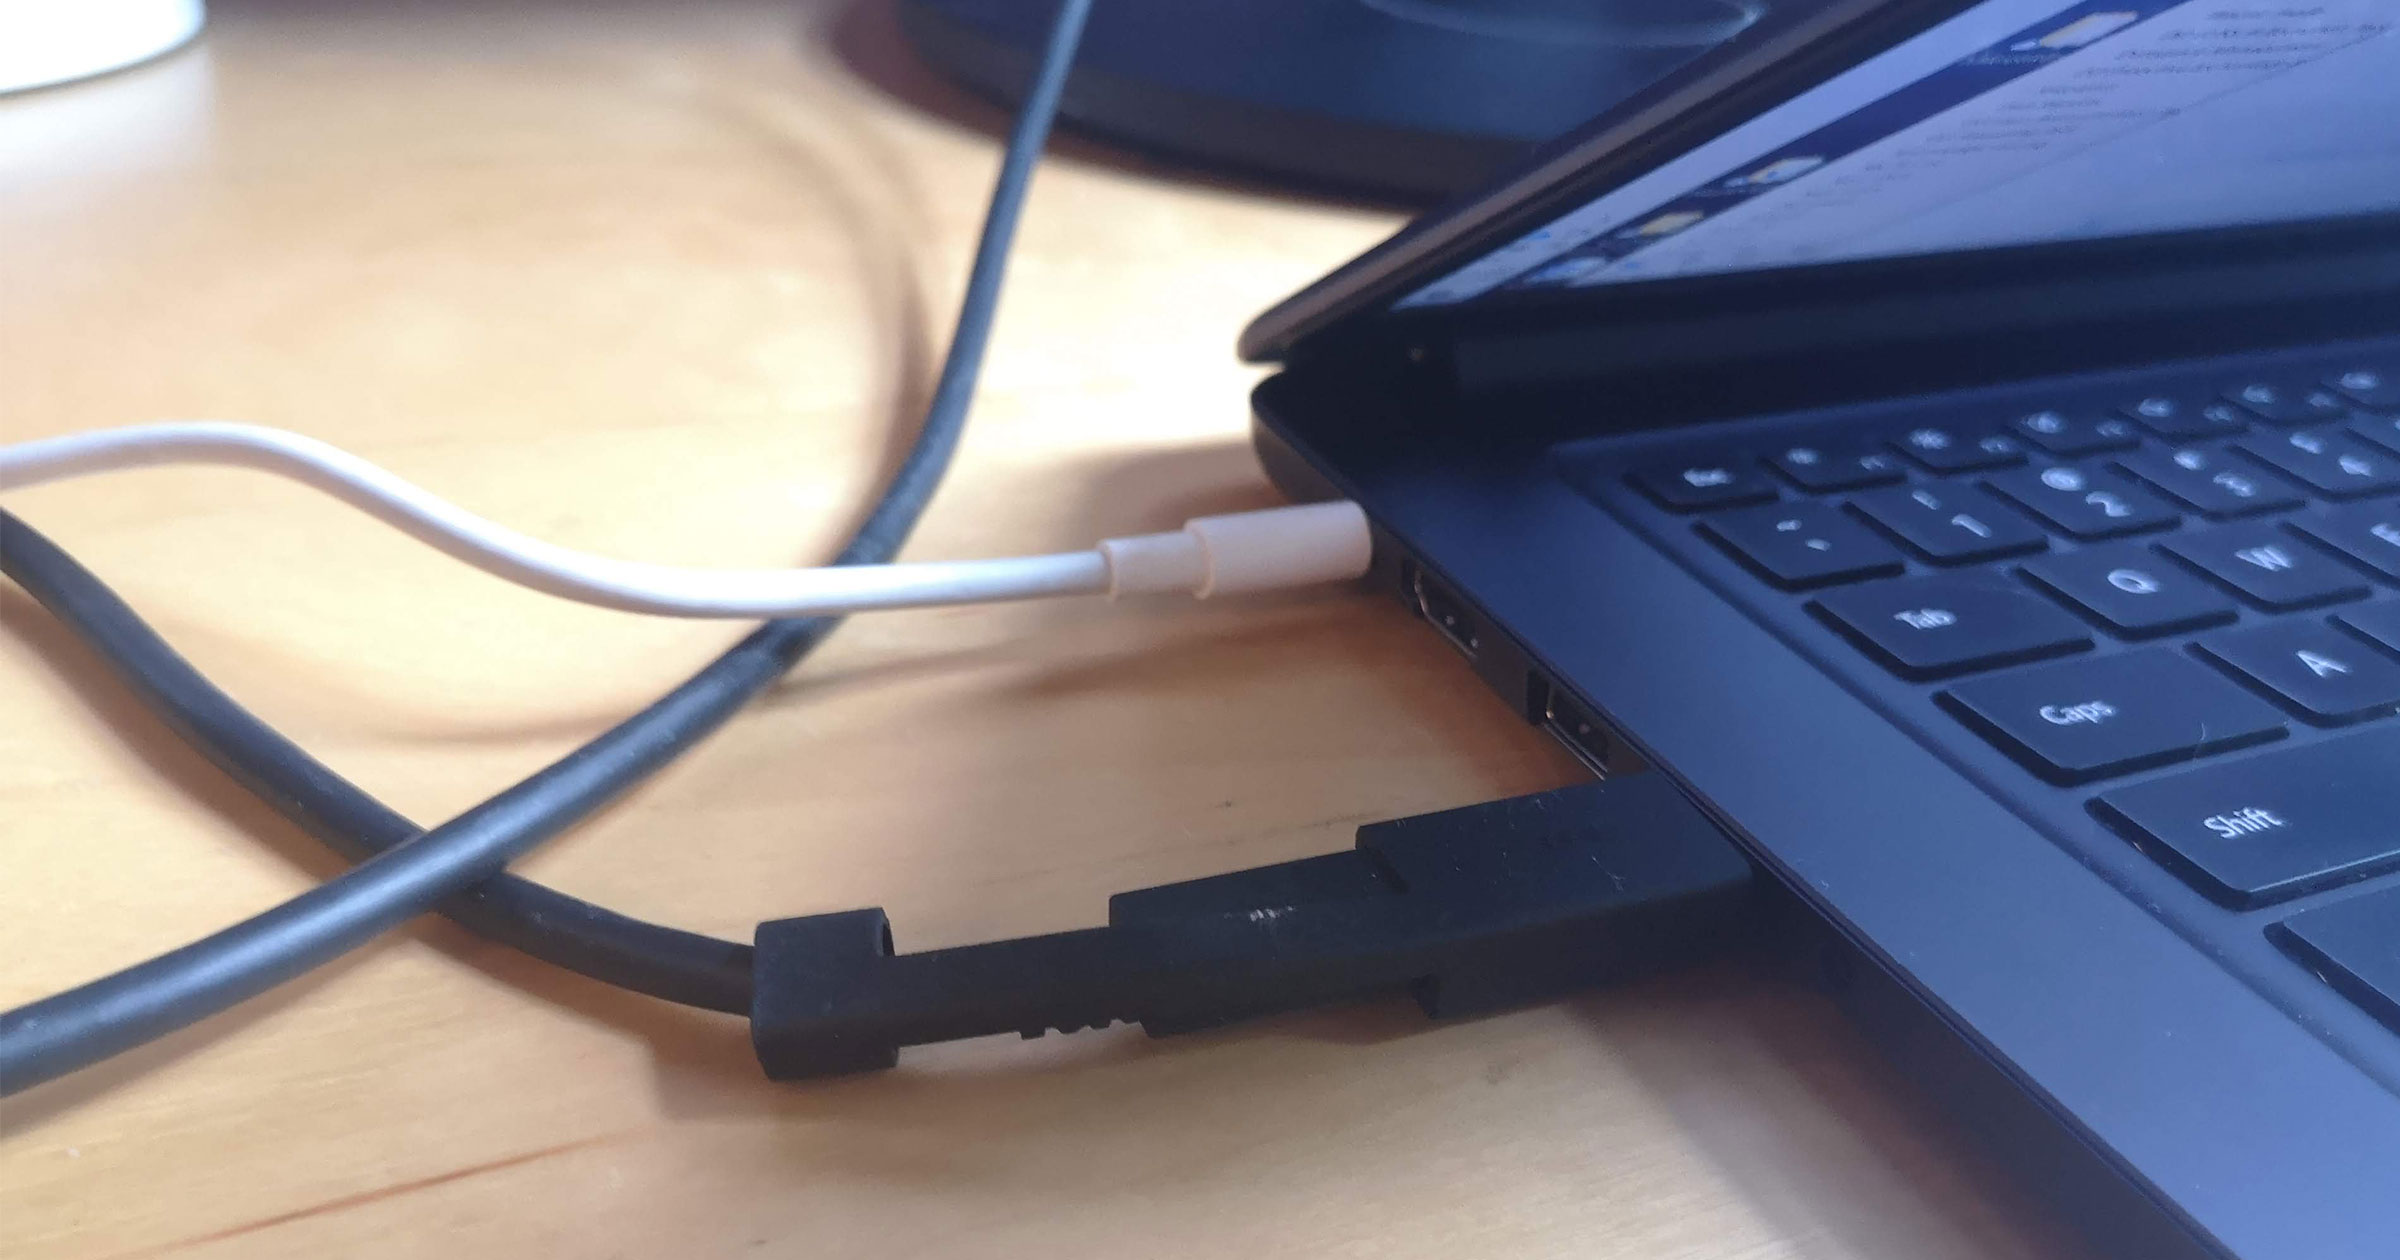 [PL] Recenzja monitora Philips 272B z złączem USB-C